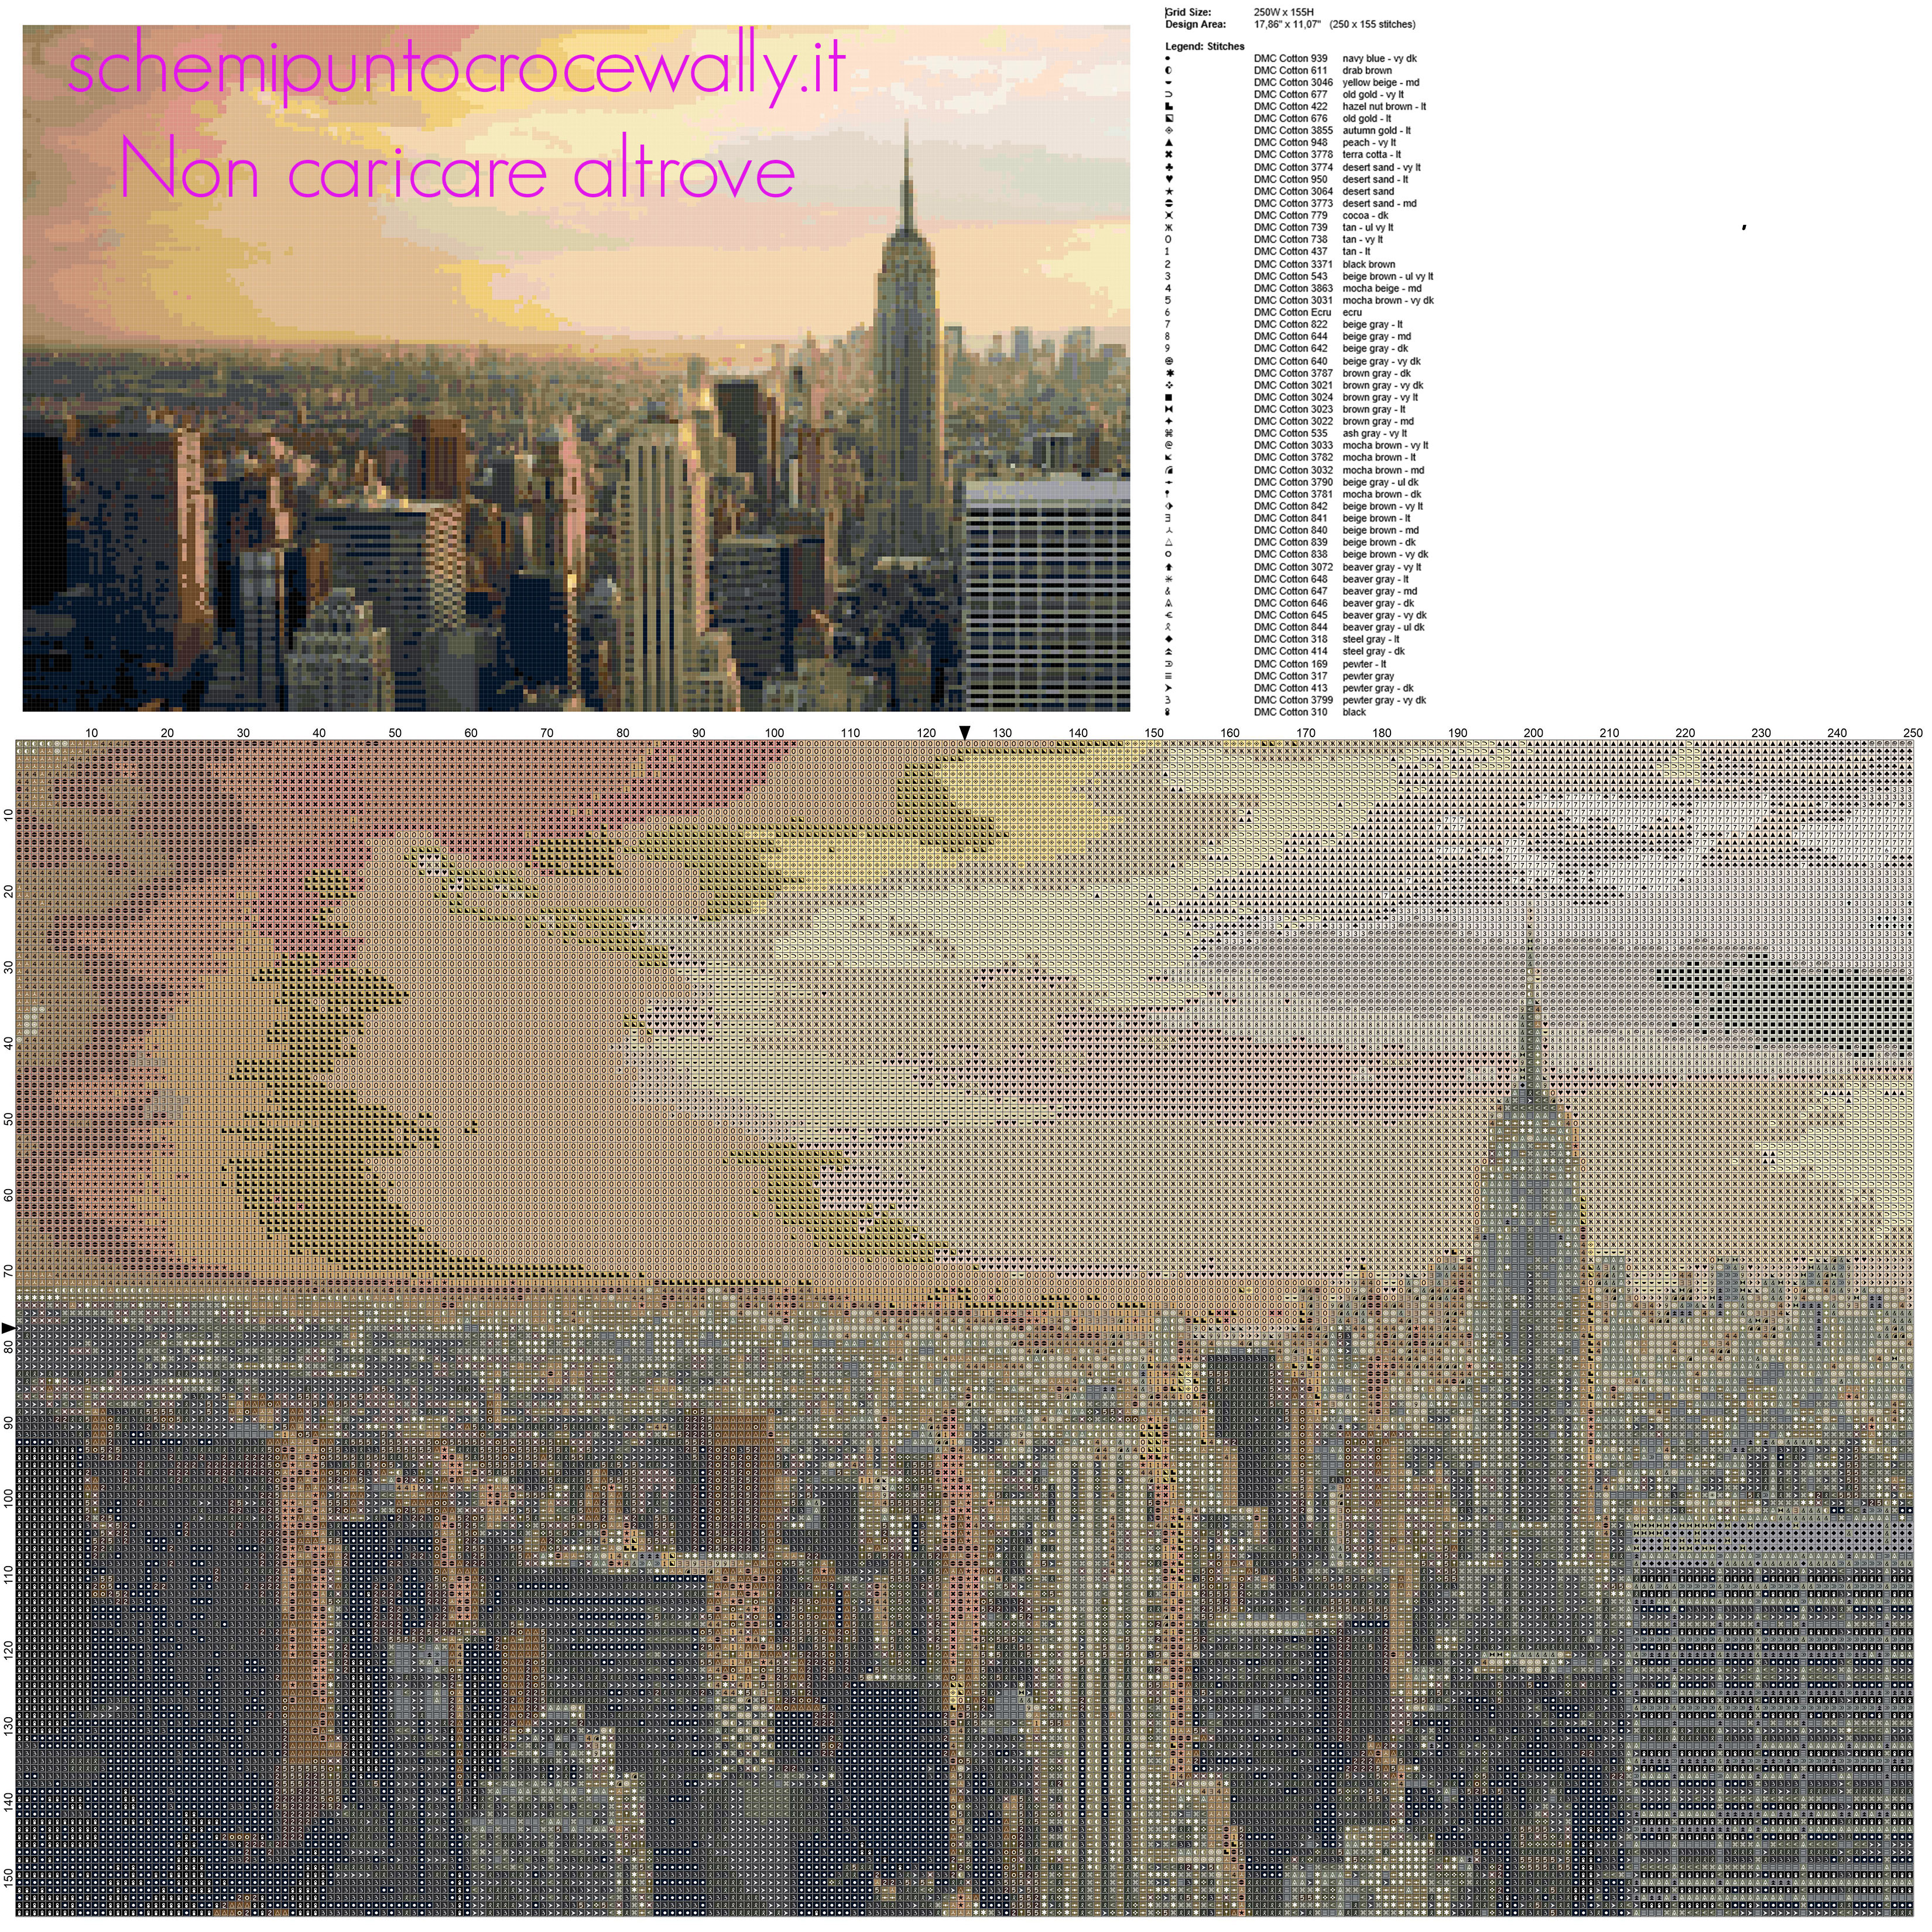 Il panorama di New York schema punto croce idea quadro casa